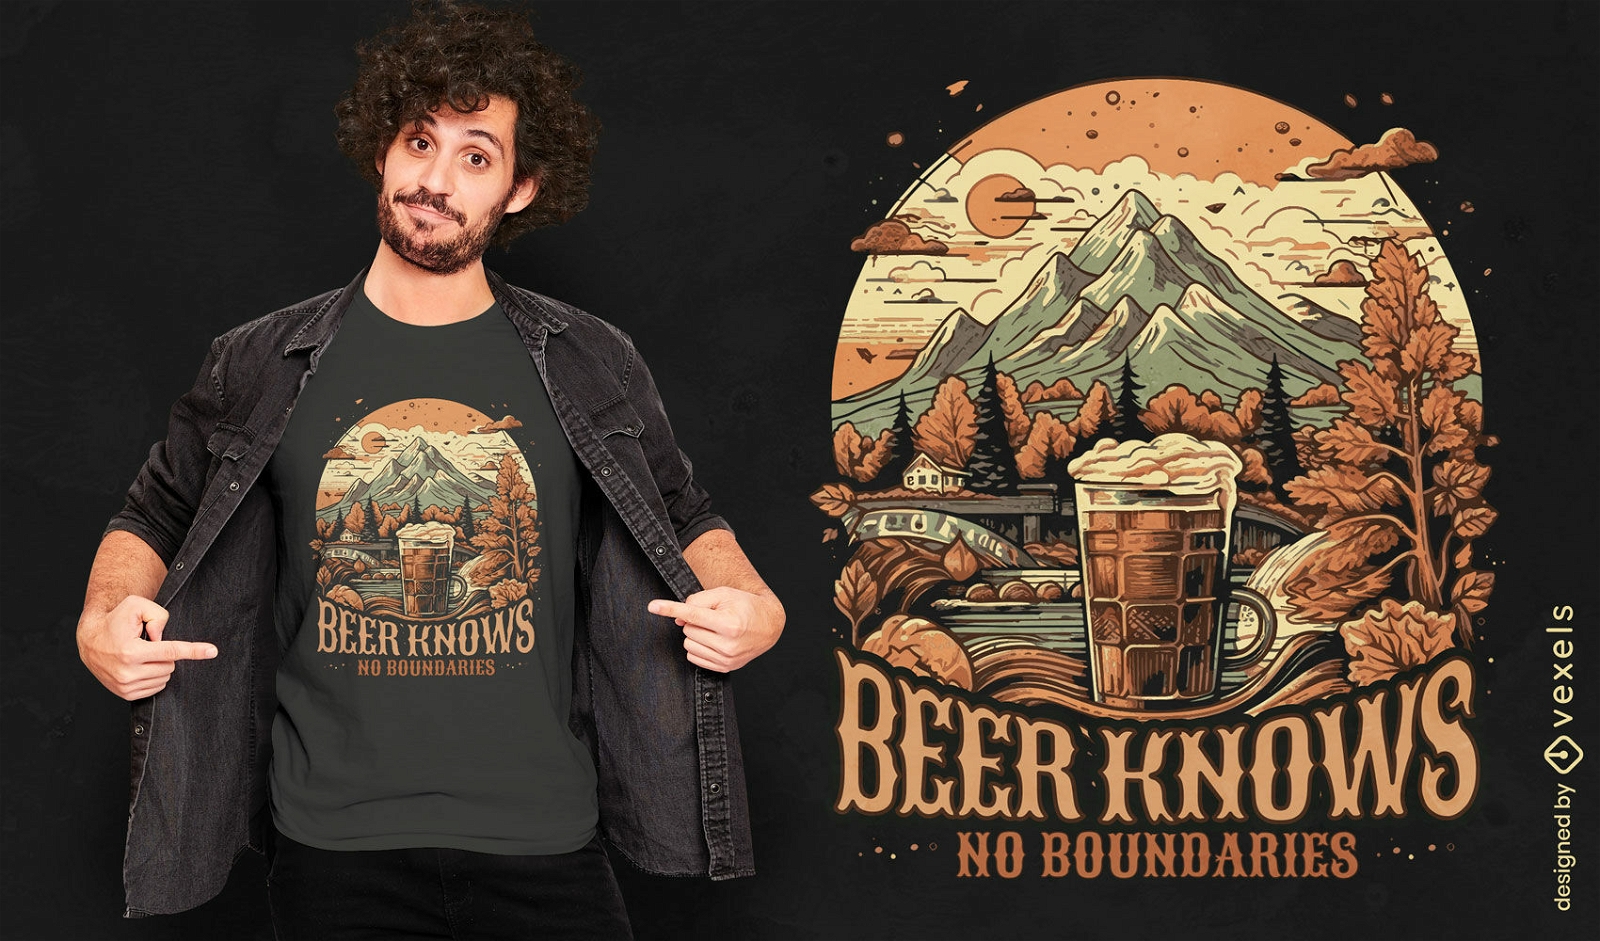 La cerveza no conoce fronteras diseño de camiseta oktoberfest